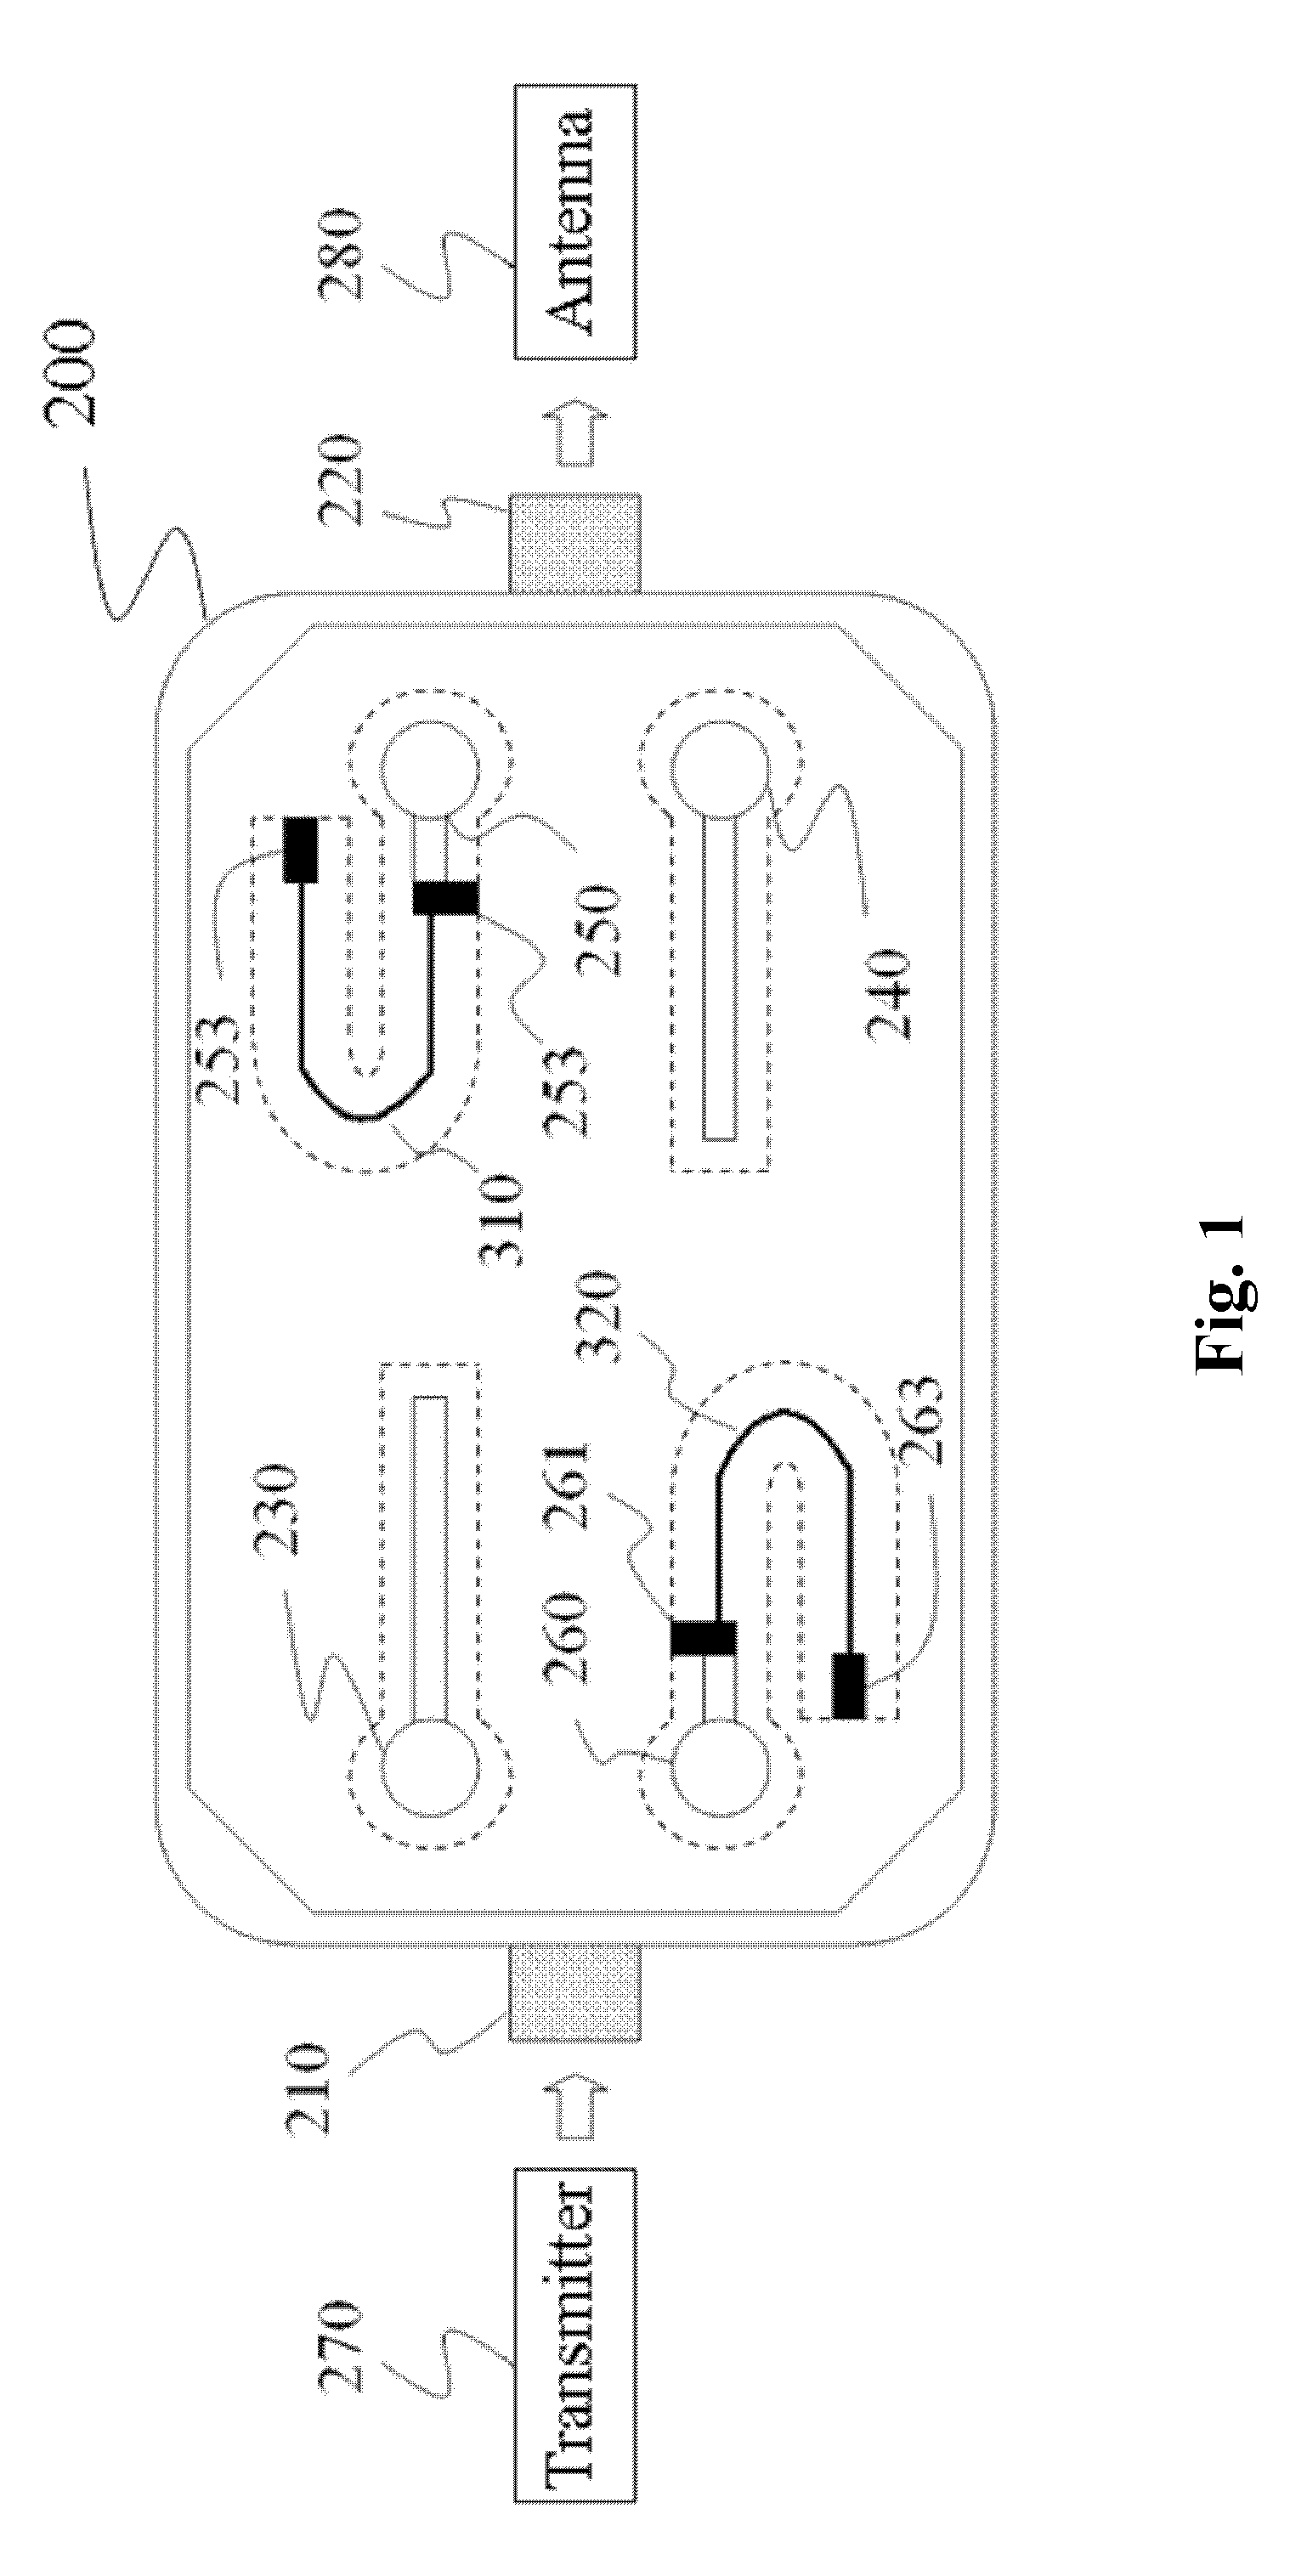 Terminal circuit and bi-directional coupler using the terminal circuit